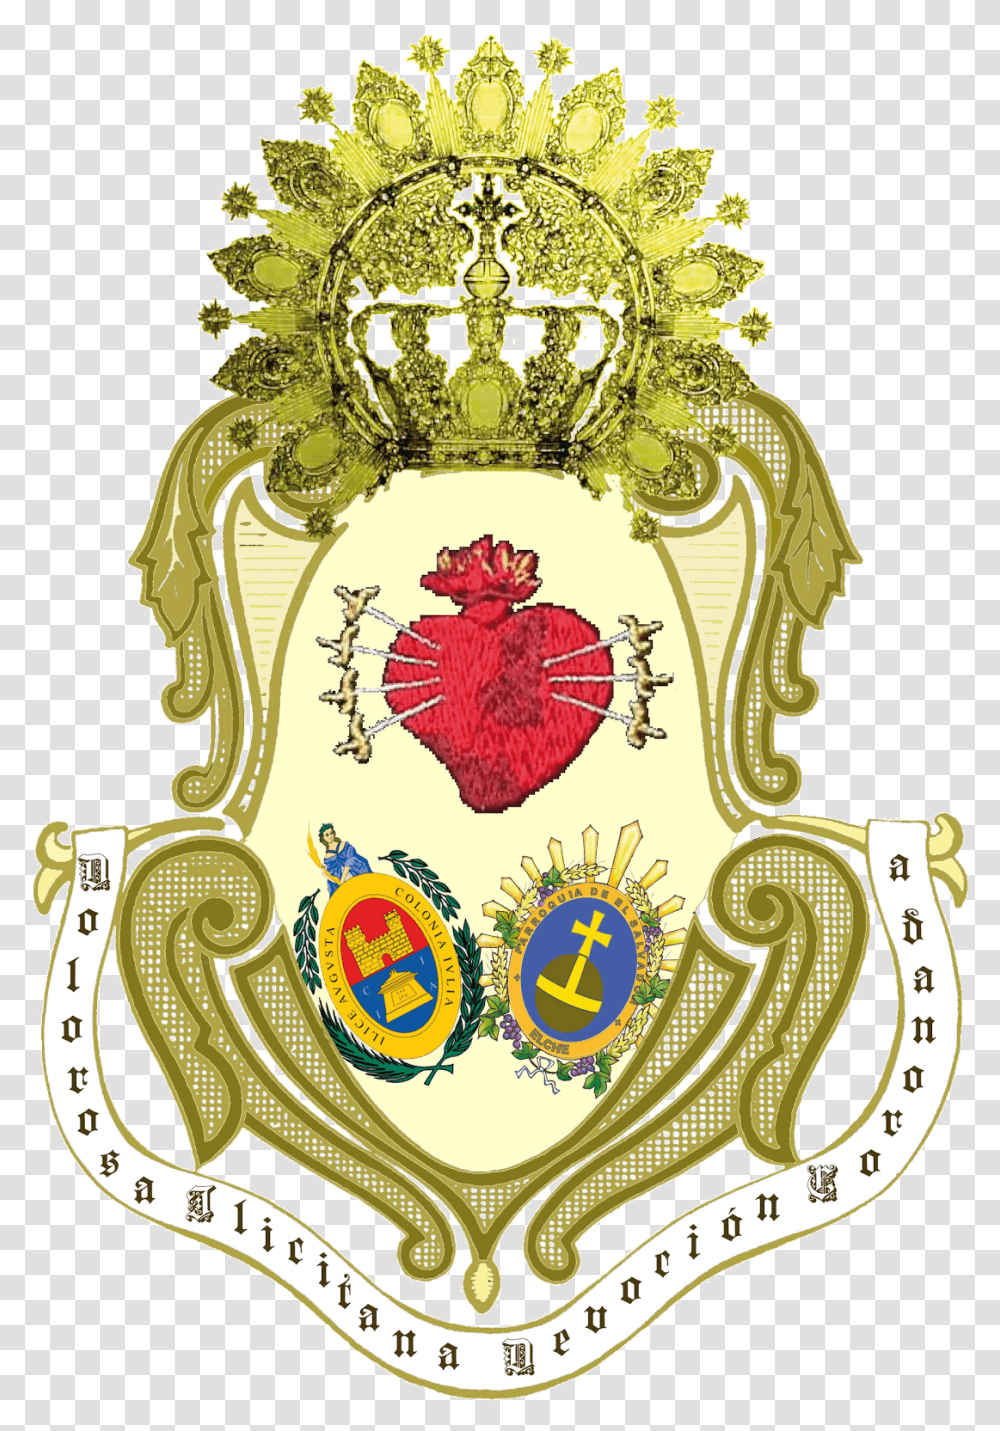 Escudo De El Salvador, Furniture, Pattern, Emblem Transparent Png